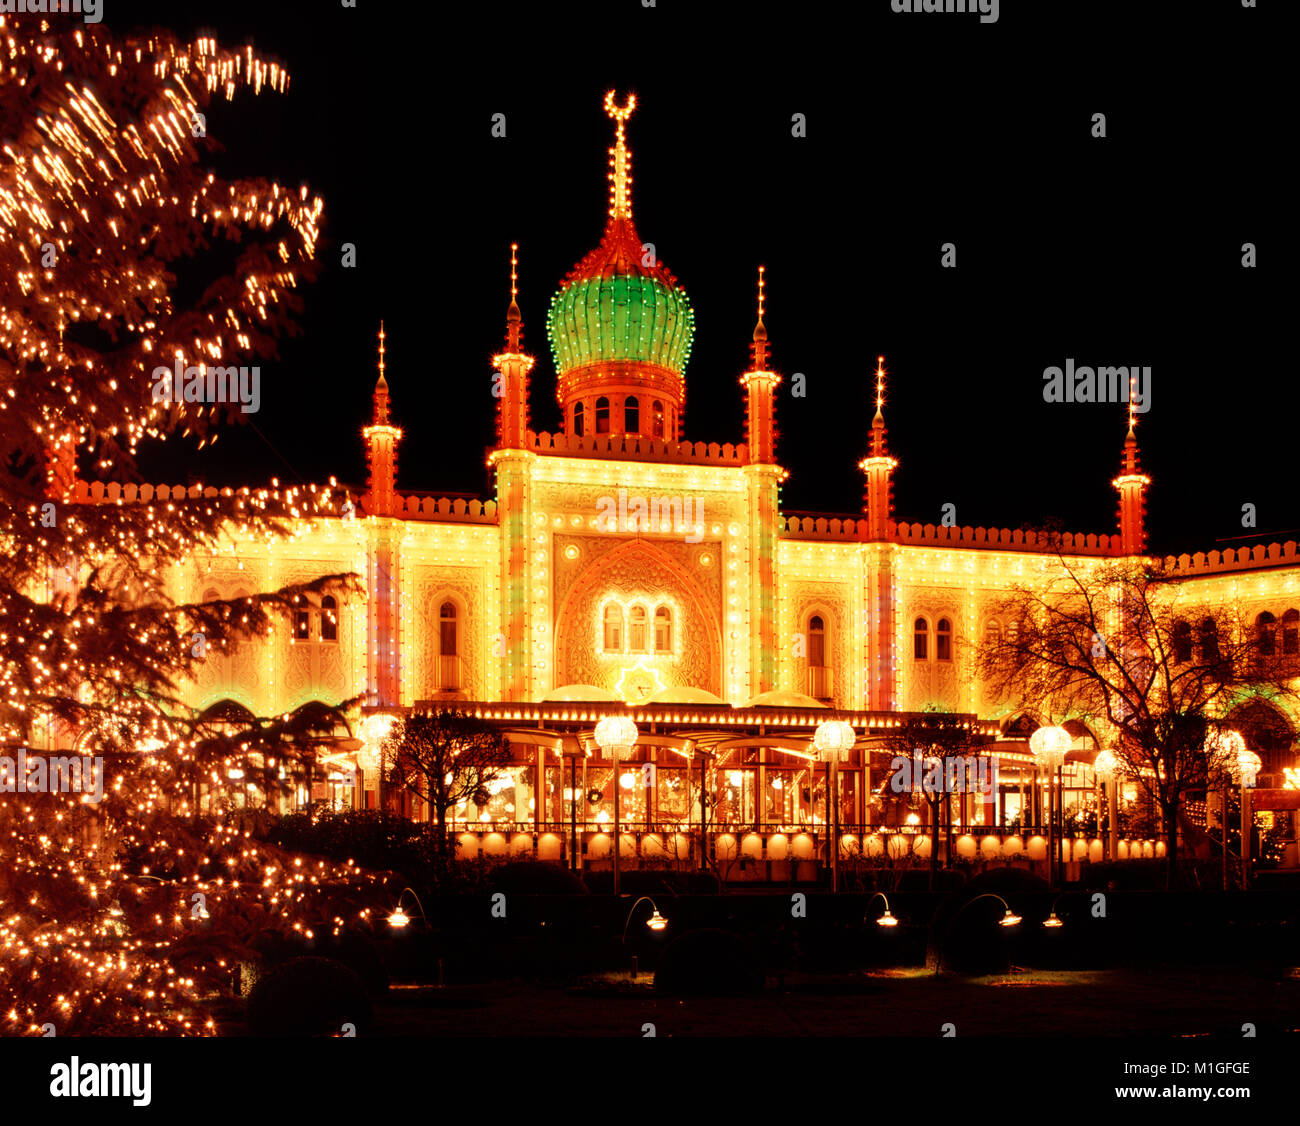 Weihnachtsschmuck im Tivoli, Kopenhagen, Dänemark Stockfoto